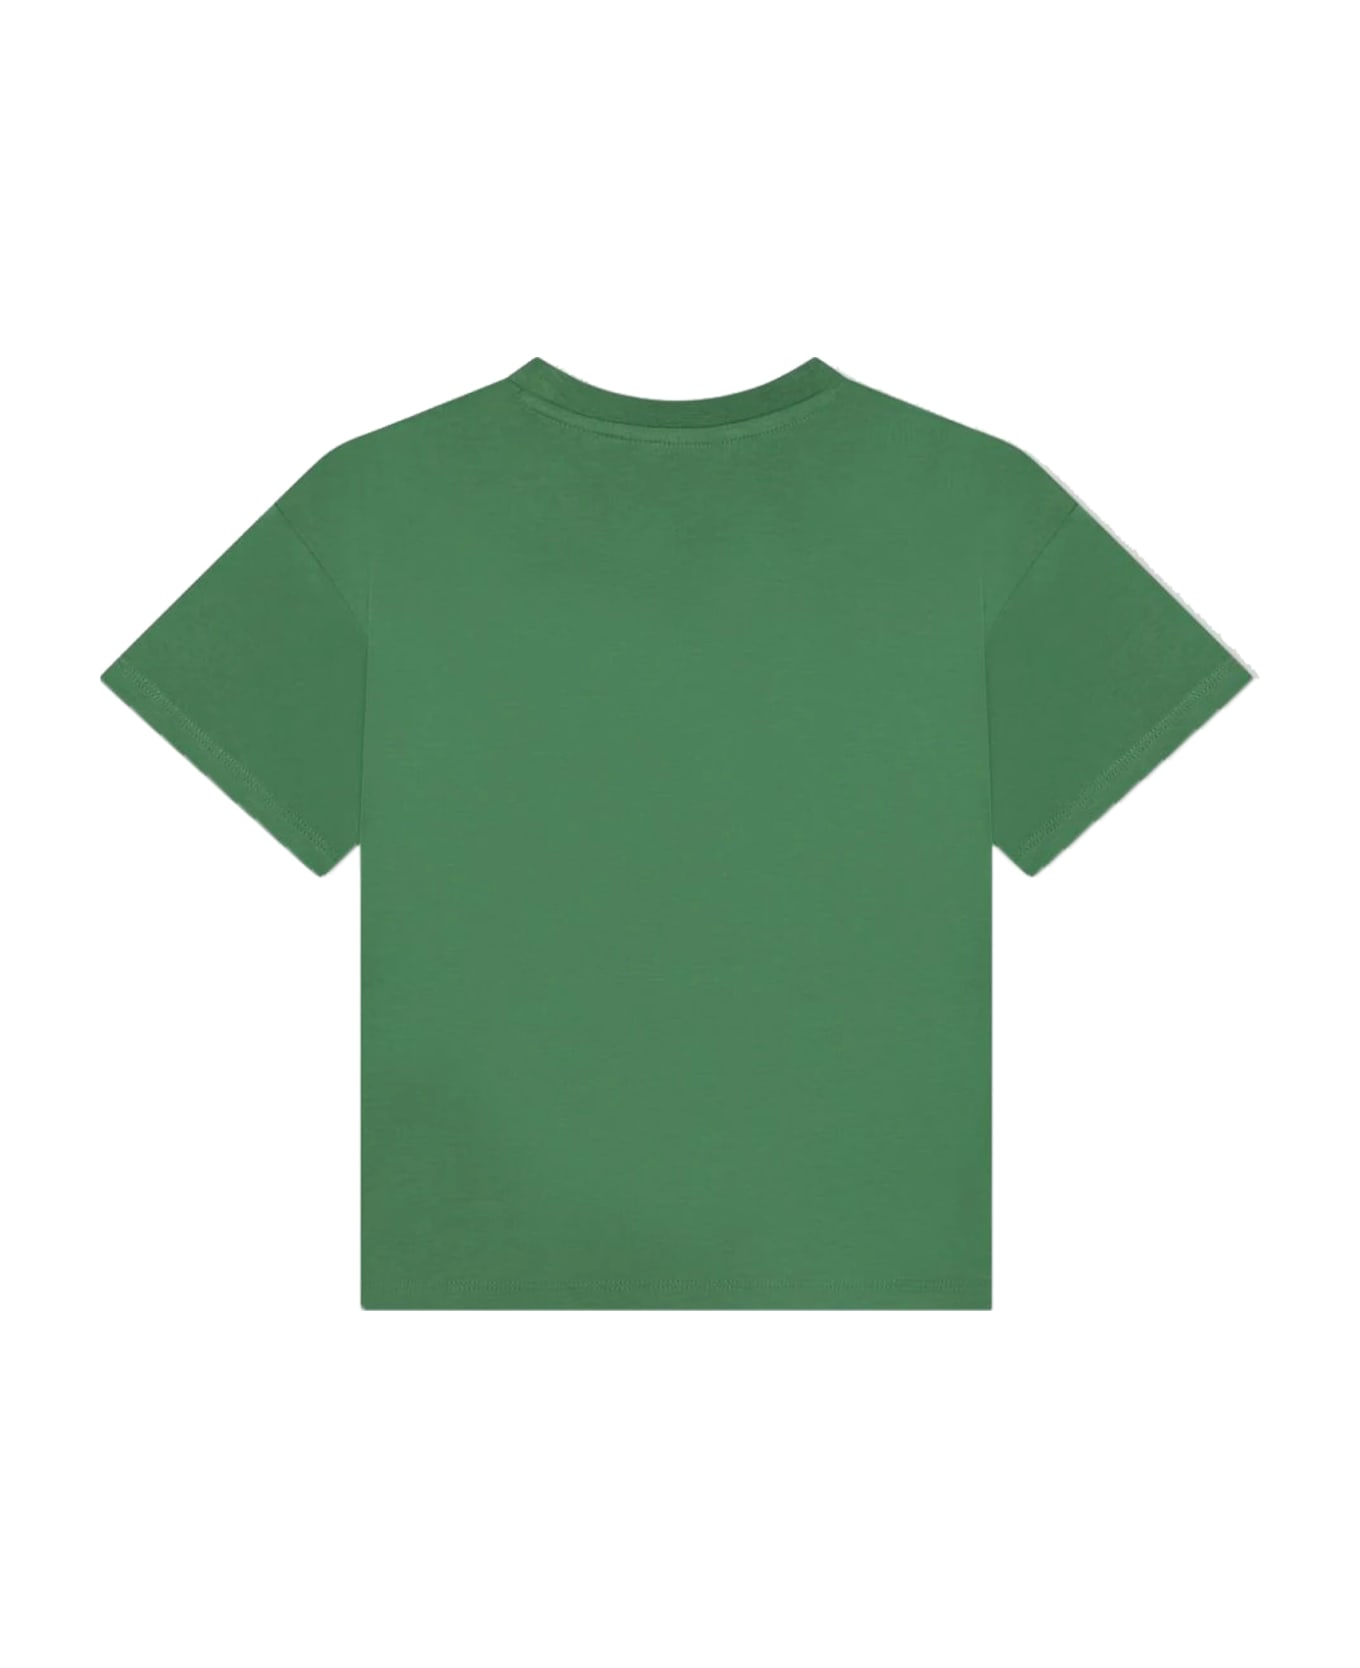 Kenzo Kids Cotton T-shirt - Green